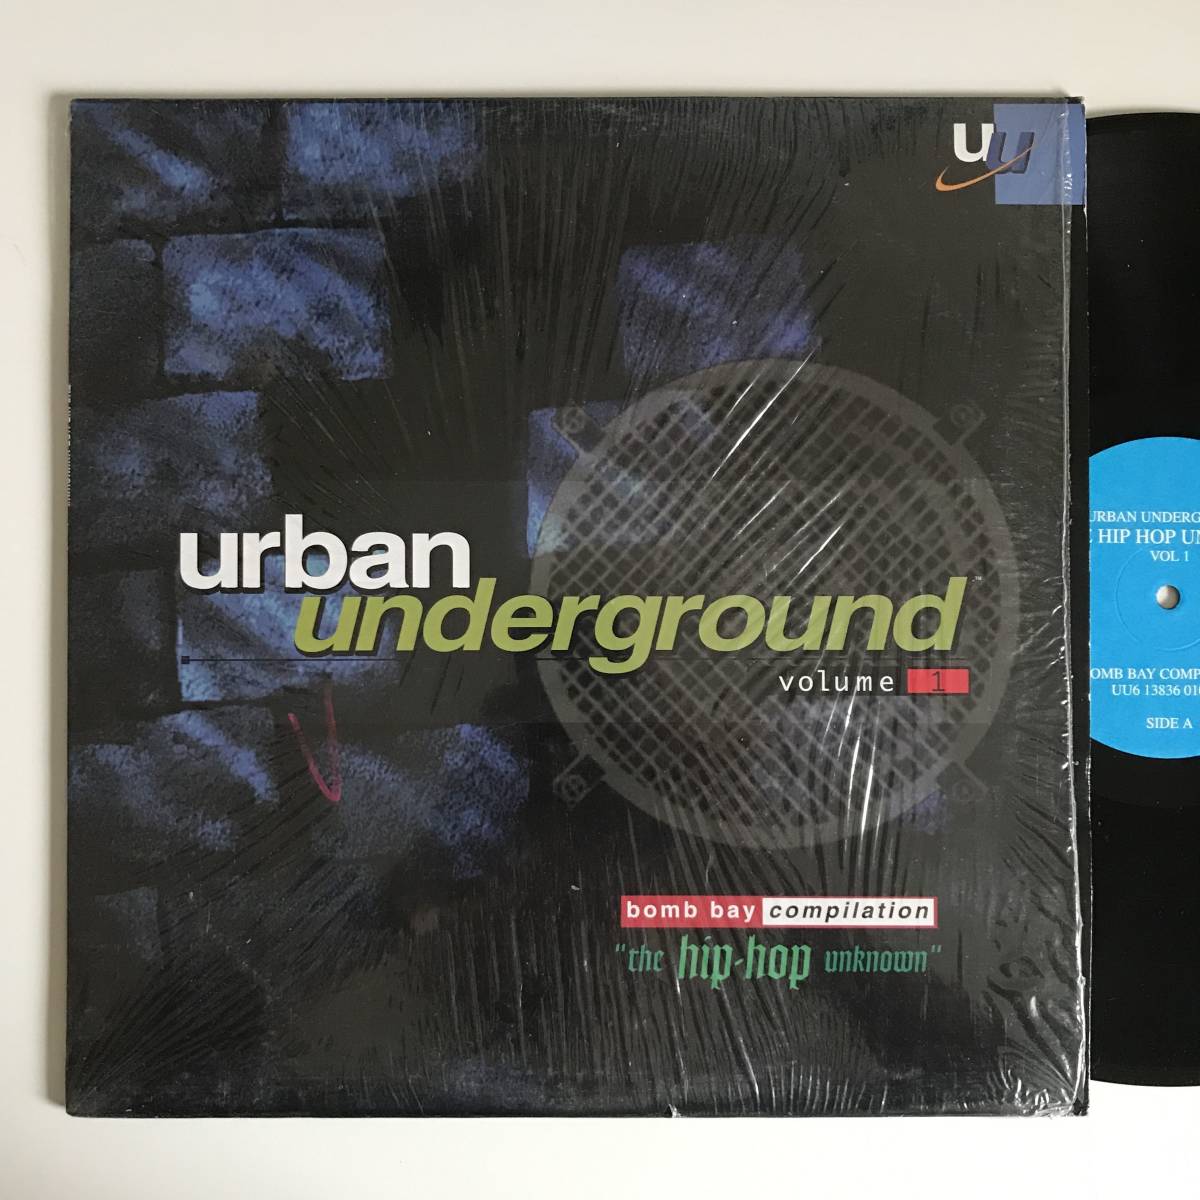 ラップ、ヒップホップ Various - Volume 1: The Hip Hop Unknown (Bomb Bay Compilation)